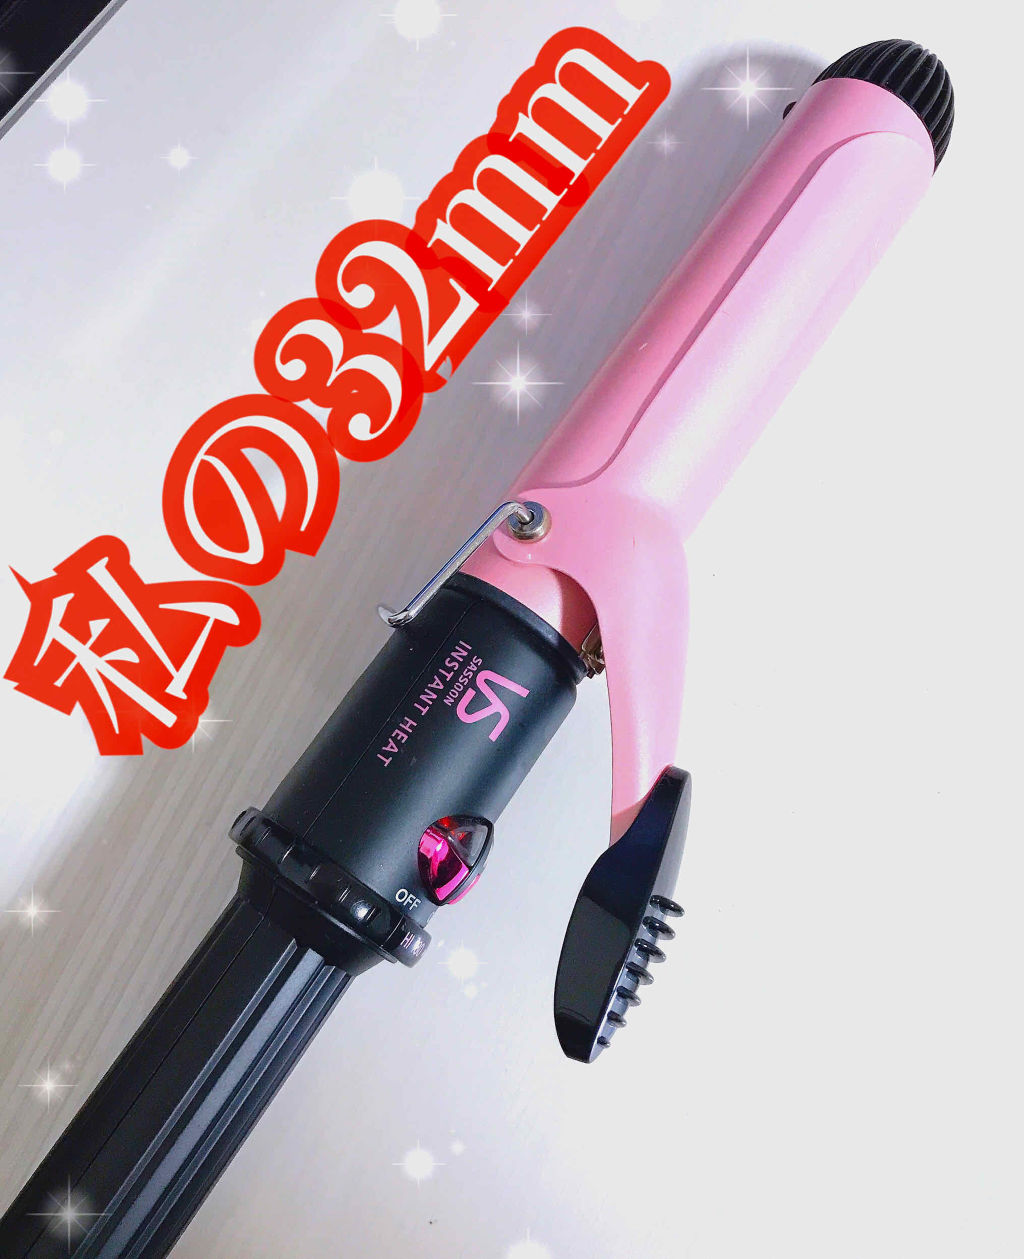 カールアイロン Vsi 36 Vidal Sassoon Pink Series ヴィダルサスーン ピンクシリーズ の口コミ 32mmカールアイロンはこれ使ってます By Miii コスメヲタクの本音投稿 敏感肌 代後半 Lips